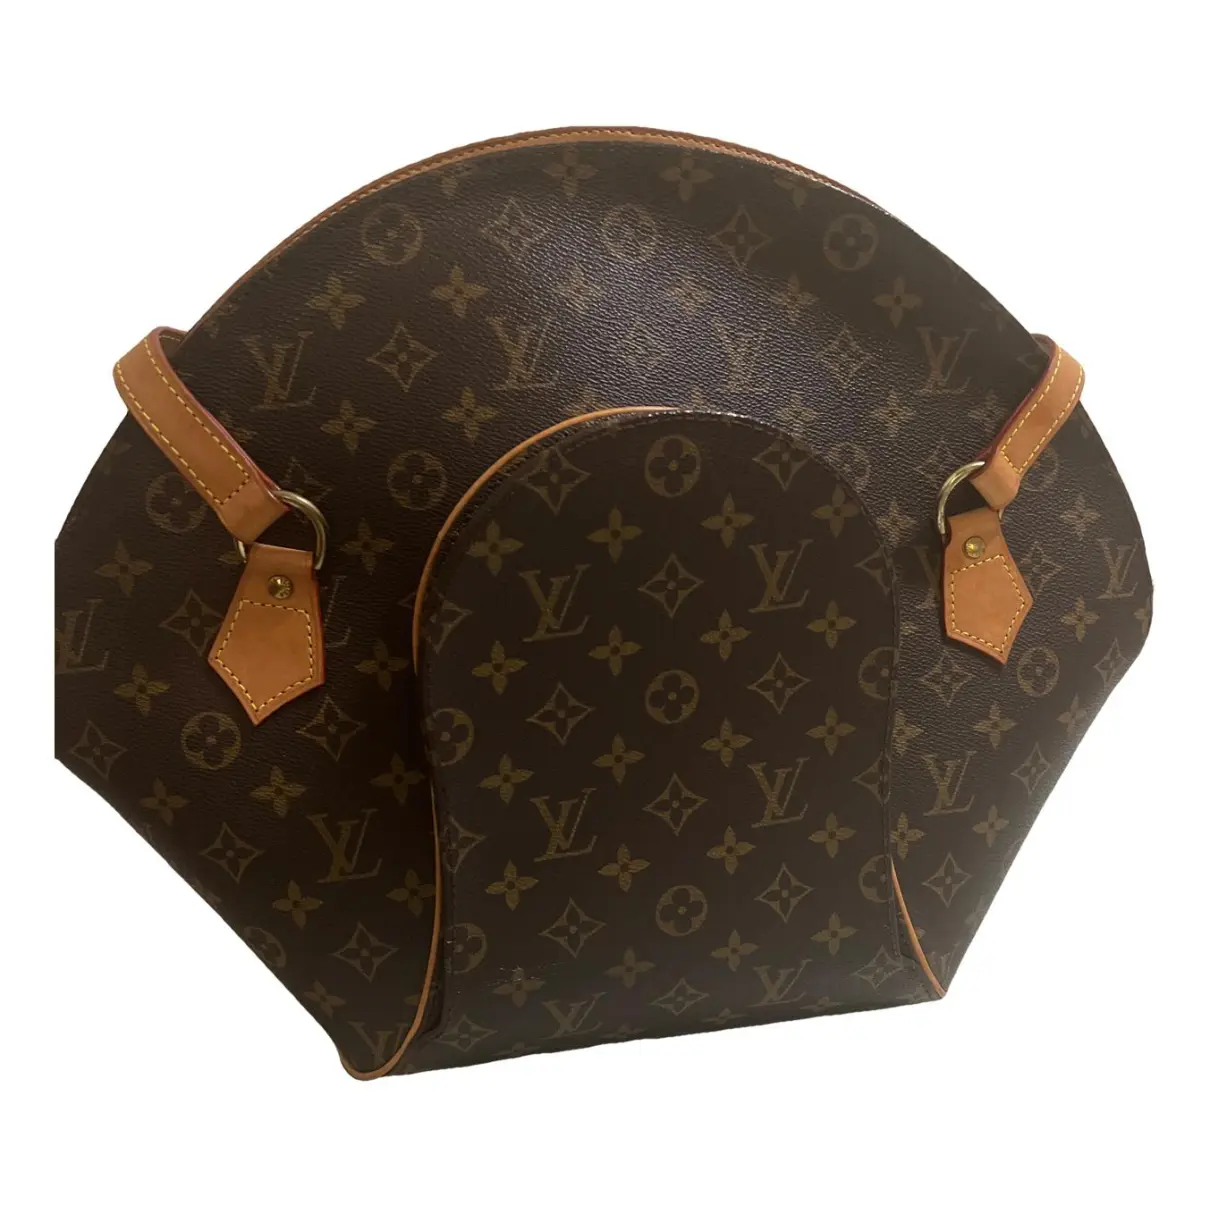 Ellipse leather handbag